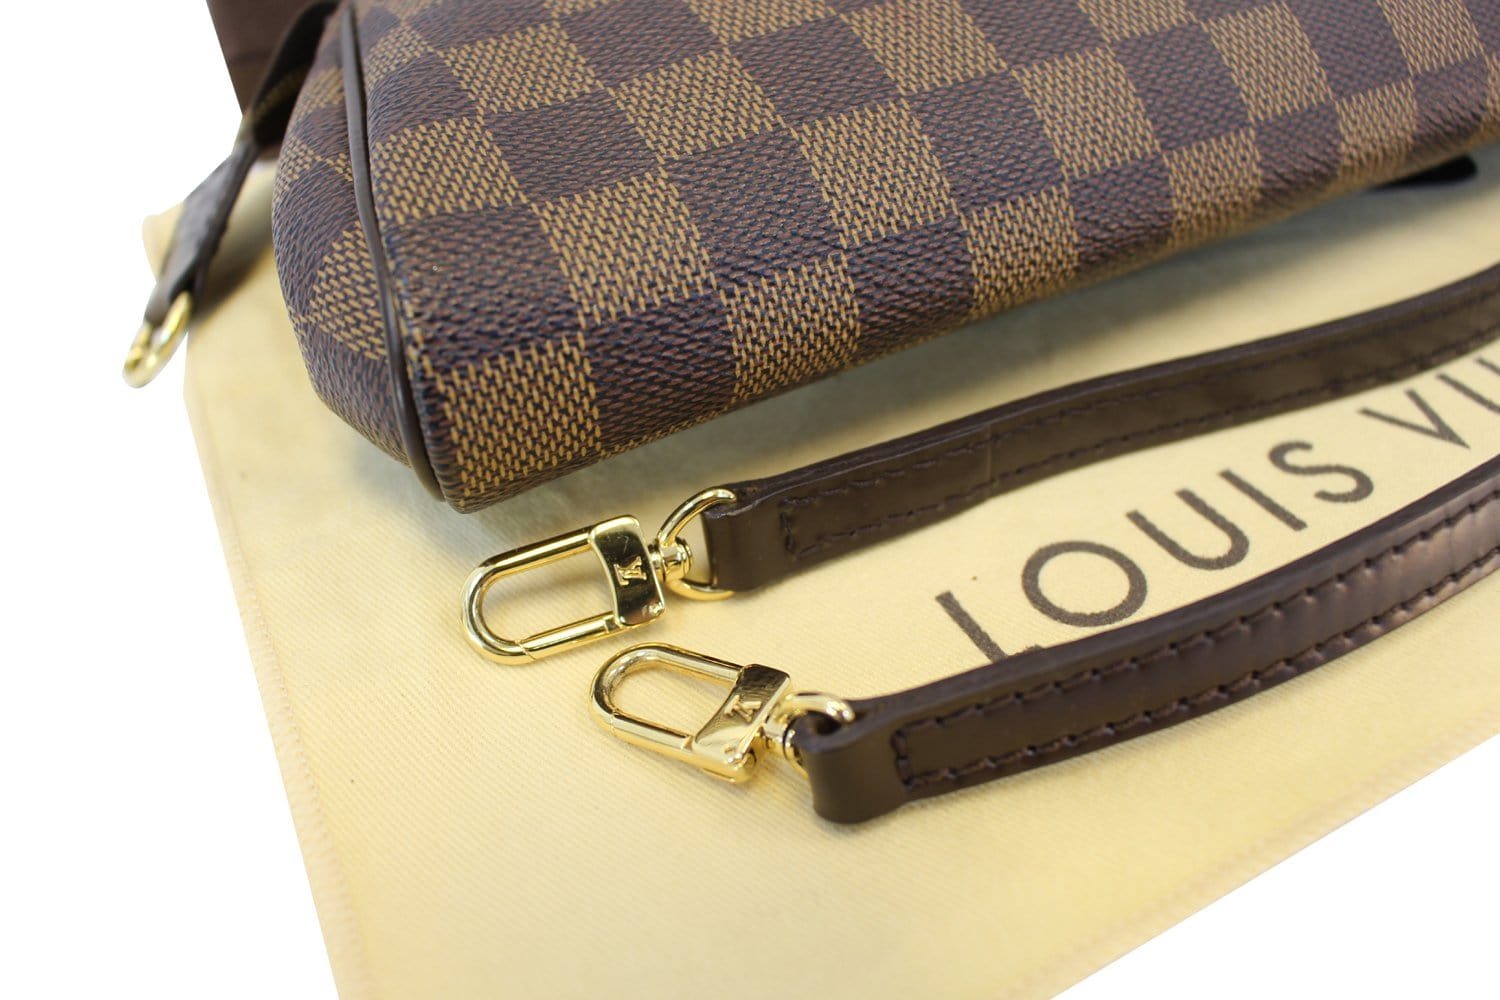 Louis Vuitton, Bags, Authentic Discontinued Louis Vuitton Eva